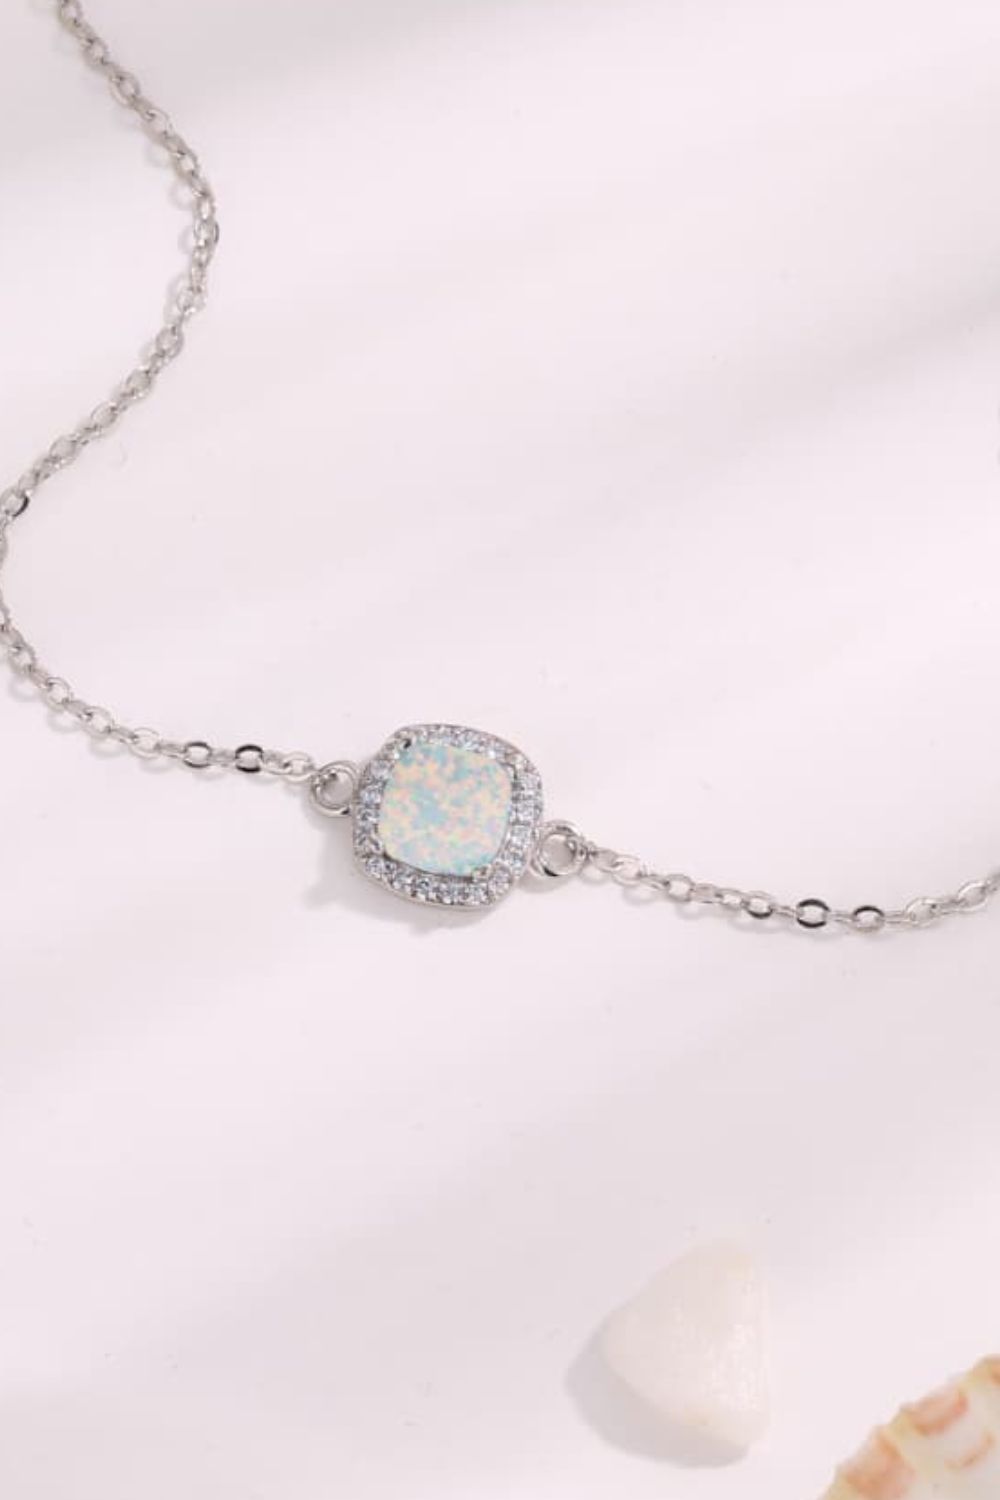 Opal Platinum-Plated Bracelet - Bracelets - FITGGINS